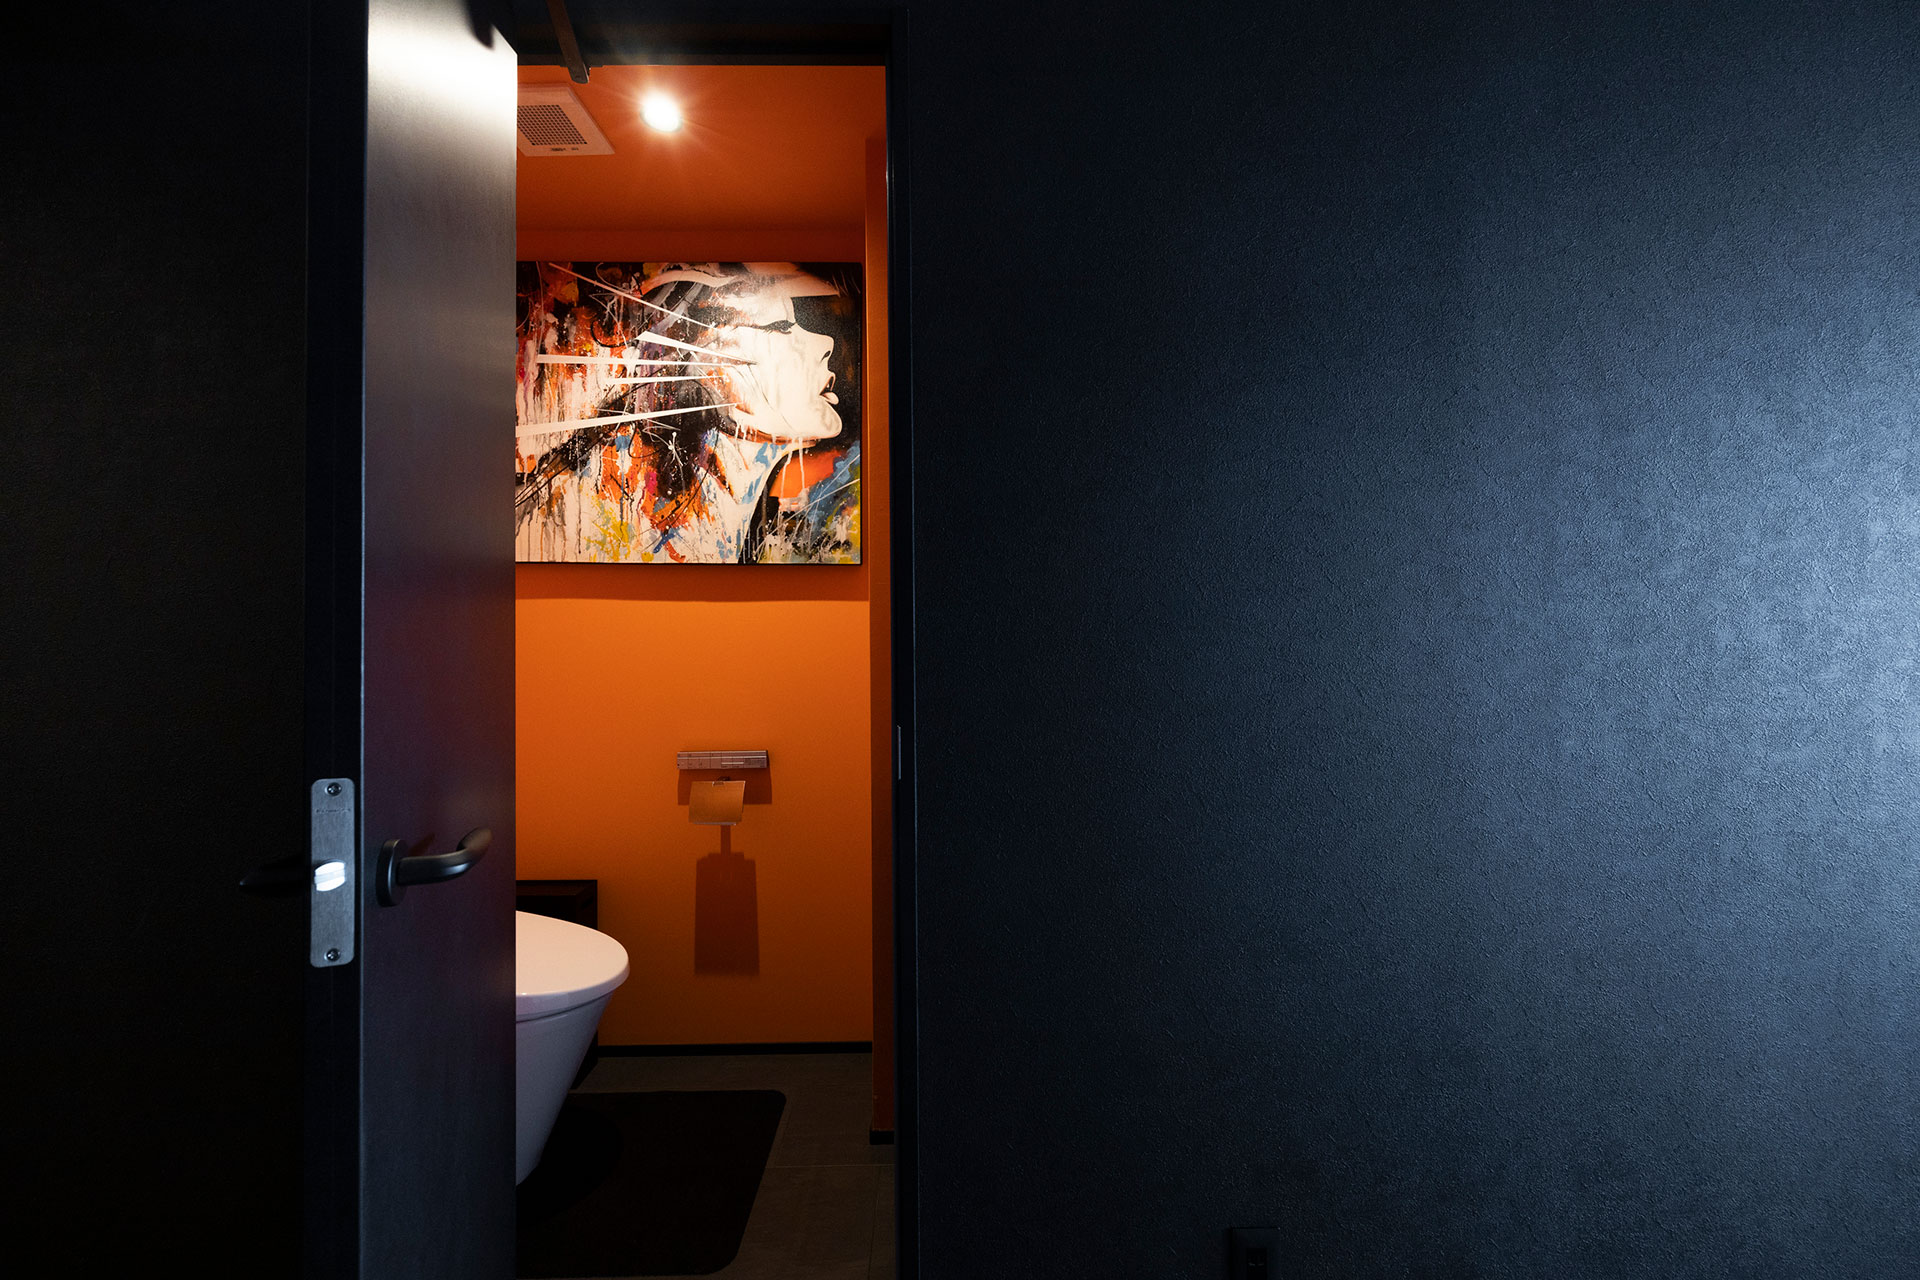 閉じられたトイレ空間は、大胆にオレンジ色の空間に。初めて購入したアートがぴったり似合った。